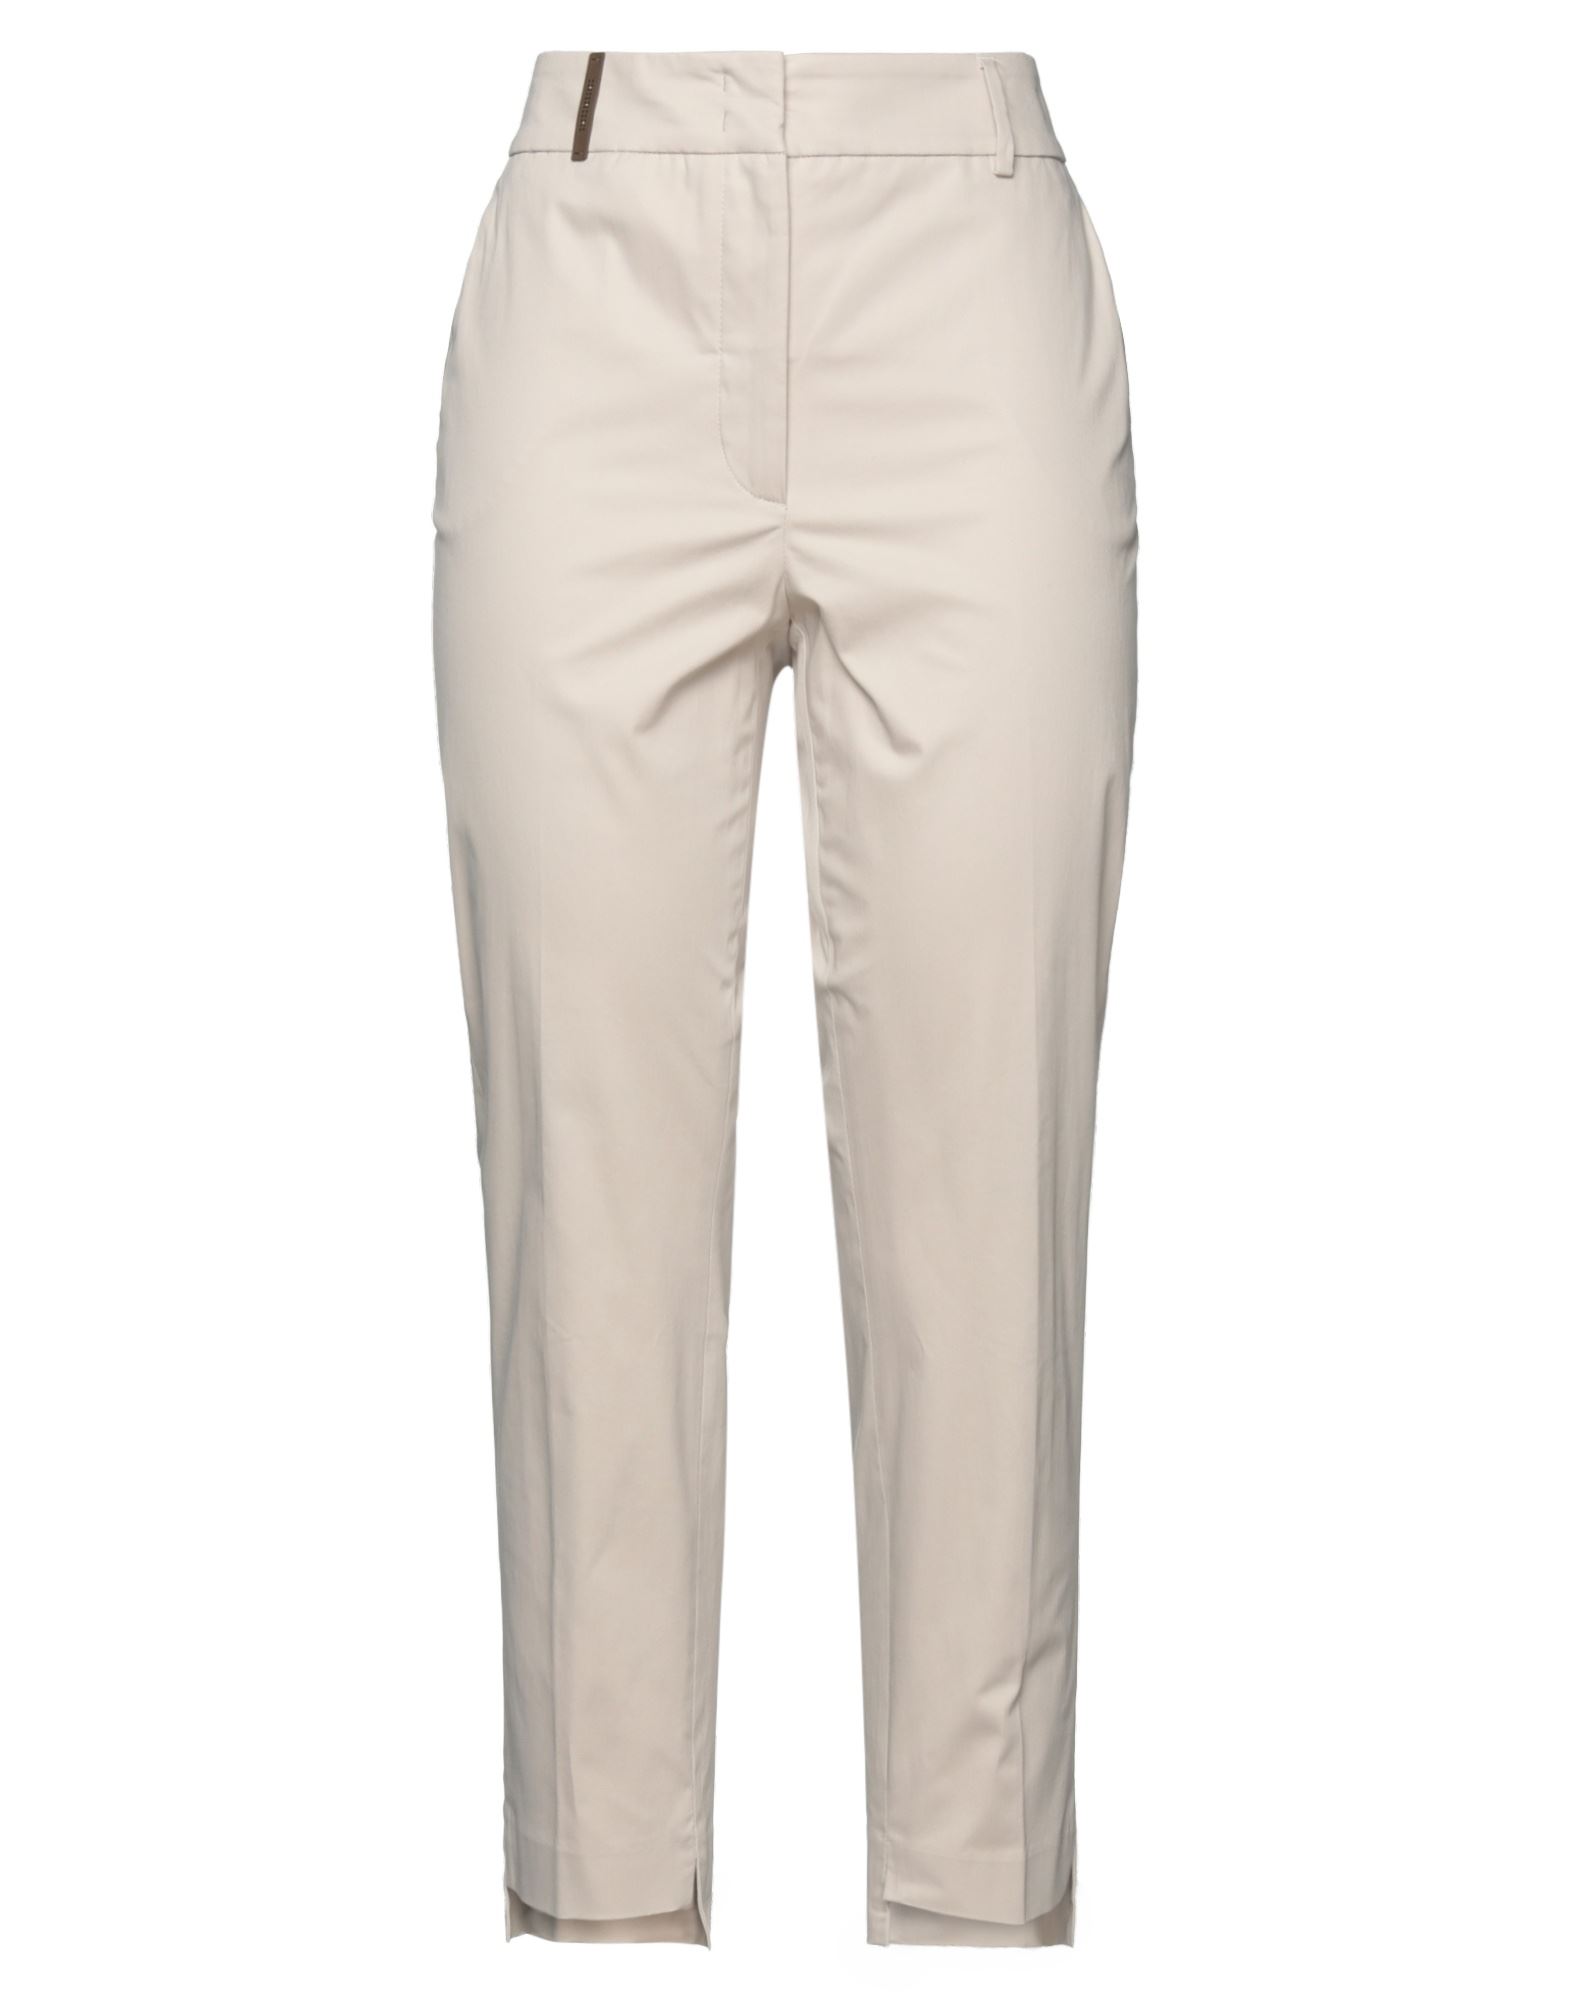 Shop Accuà By Psr Woman Pants Beige Size 4 Cotton, Elastane